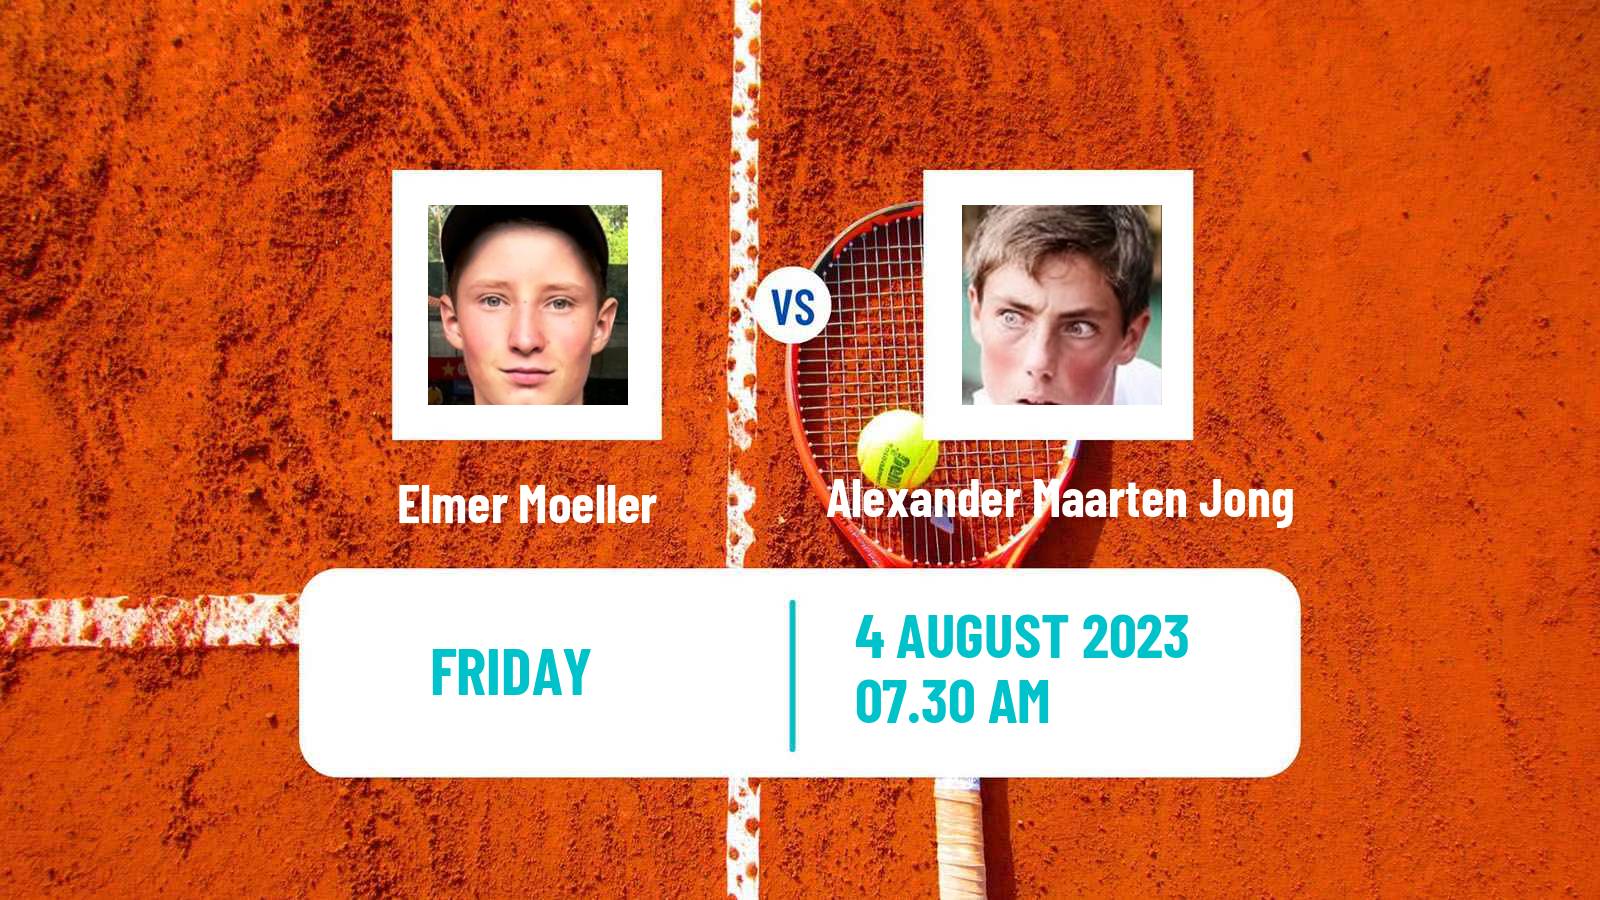 Tennis ITF M15 Eindhoven Men Elmer Moeller - Alexander Maarten Jong